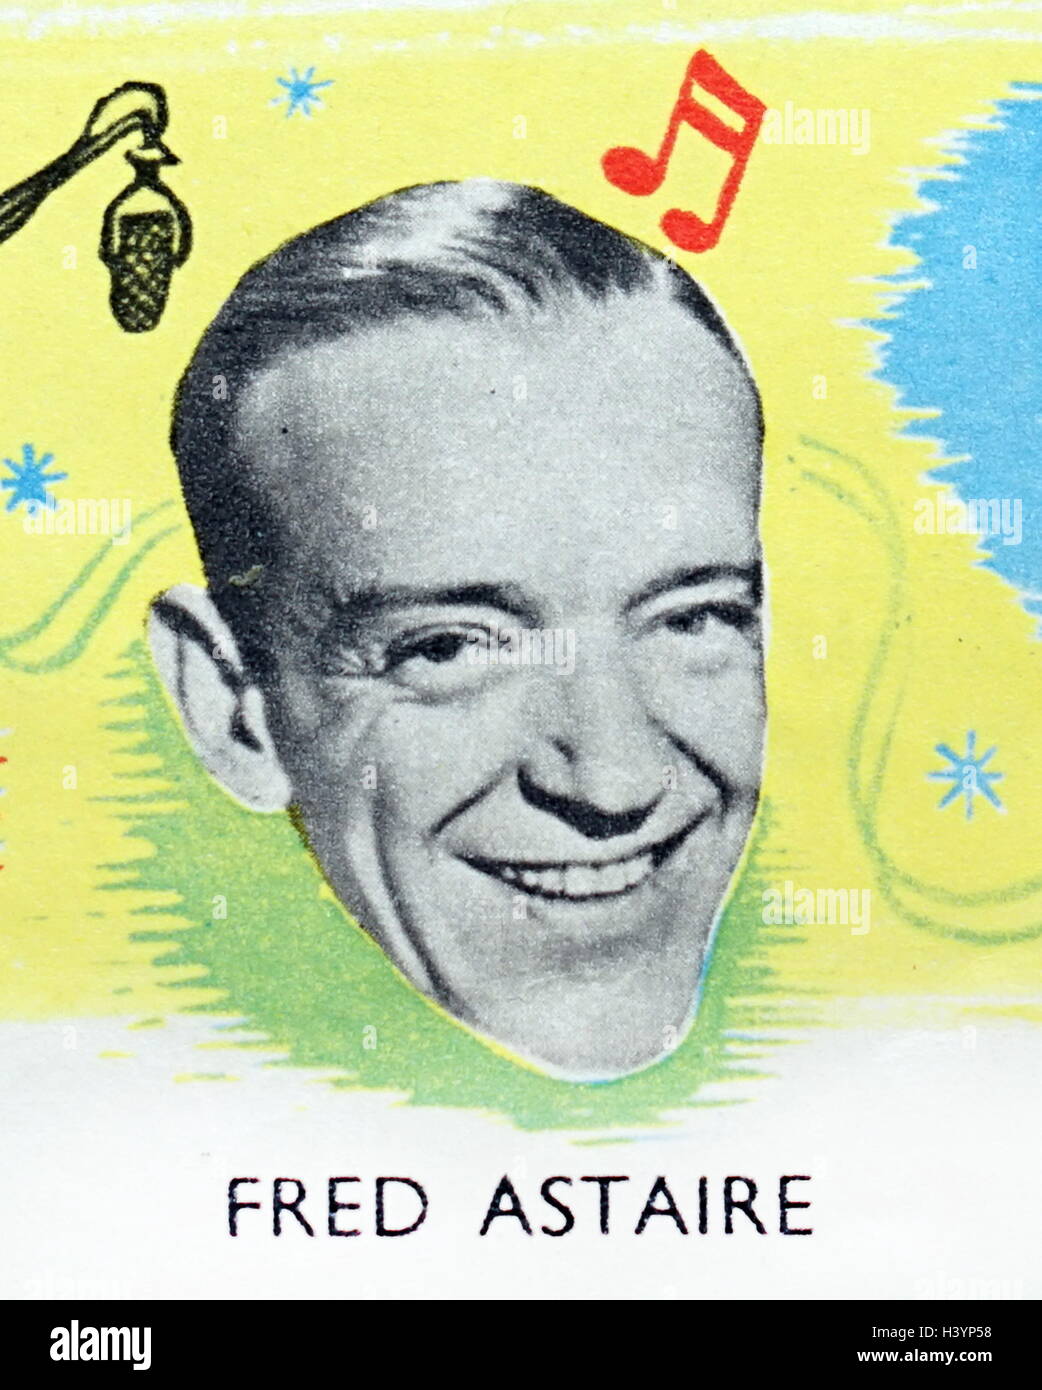 Foto von Fred Astaire (1899-1987), amerikanischer Tänzer, Sänger, Schauspieler, Choreographen, Musiker und Fernsehmoderator. Vom 20. Jahrhundert Stockfoto